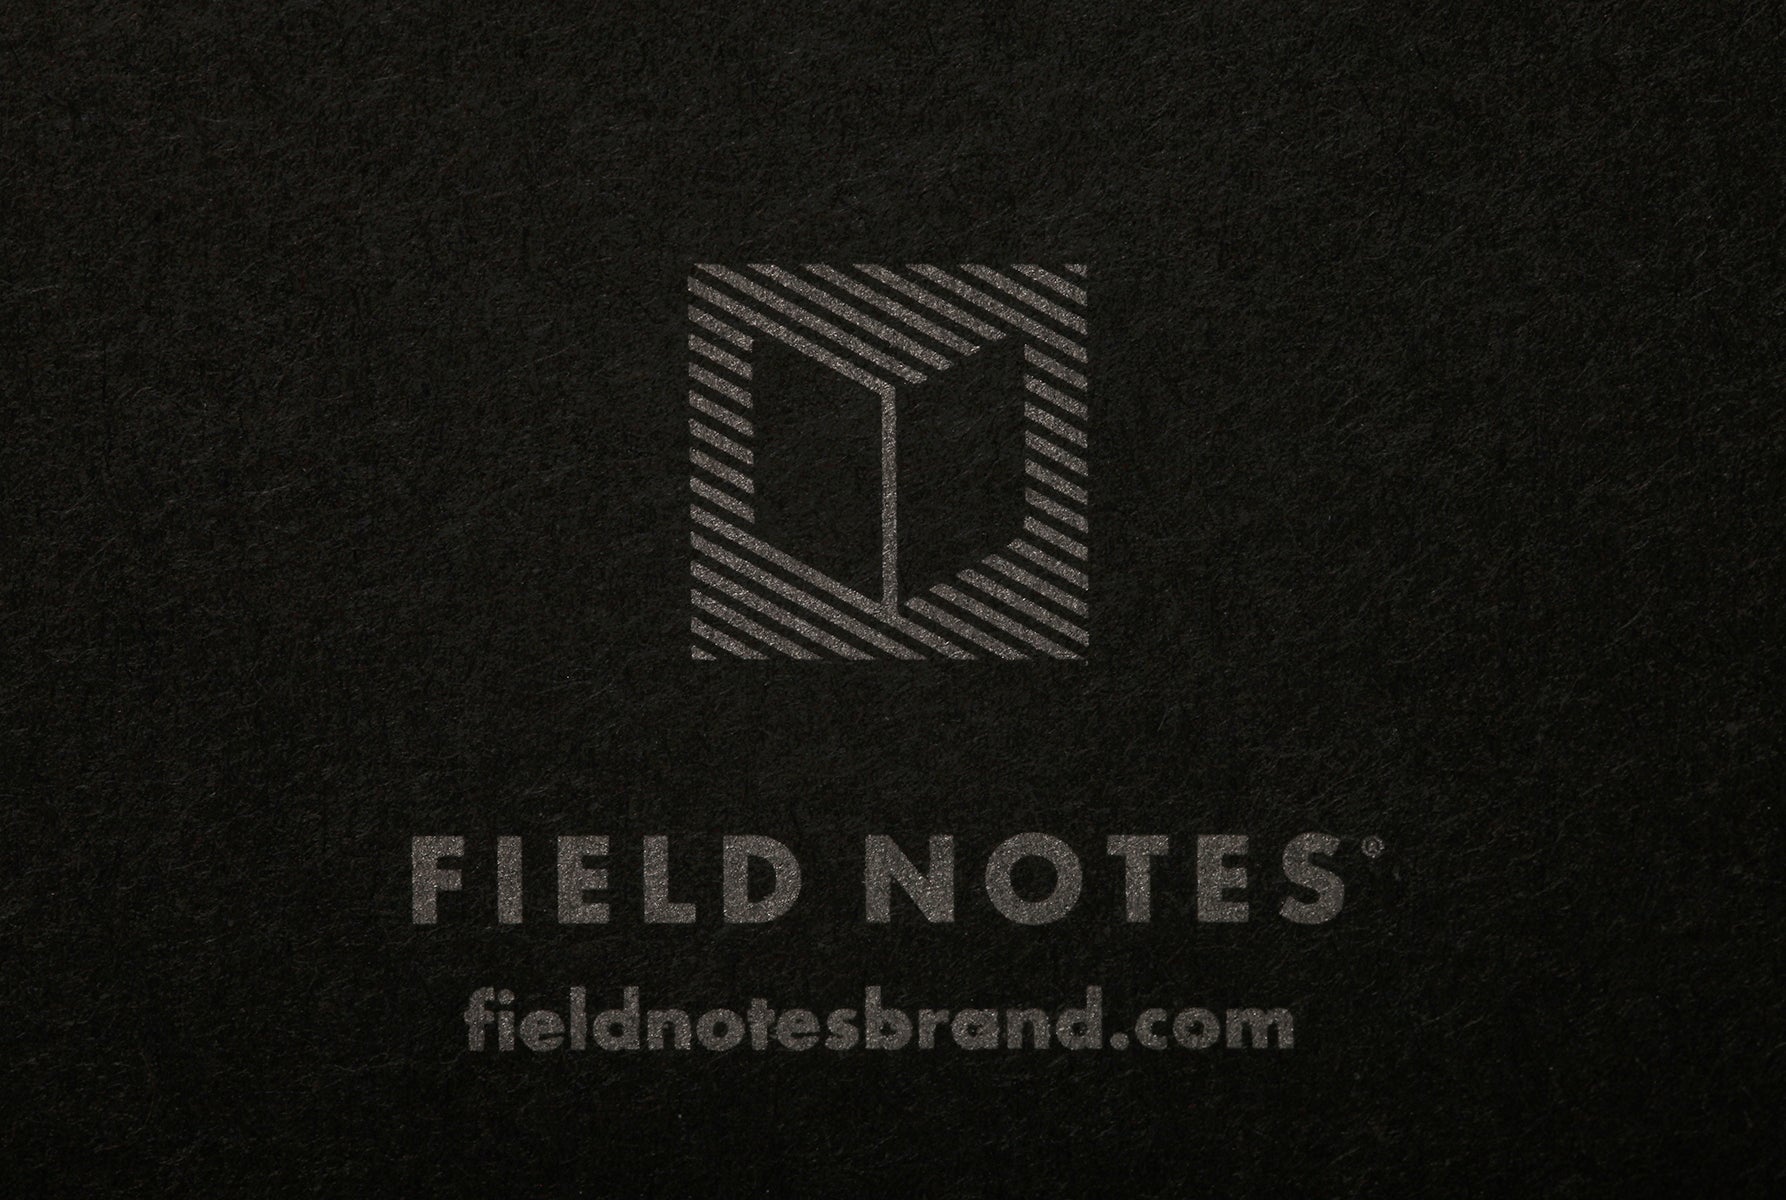 Field Notes "Pitch Black" 3-Pack Notizheft Notizhefte Field Notes 